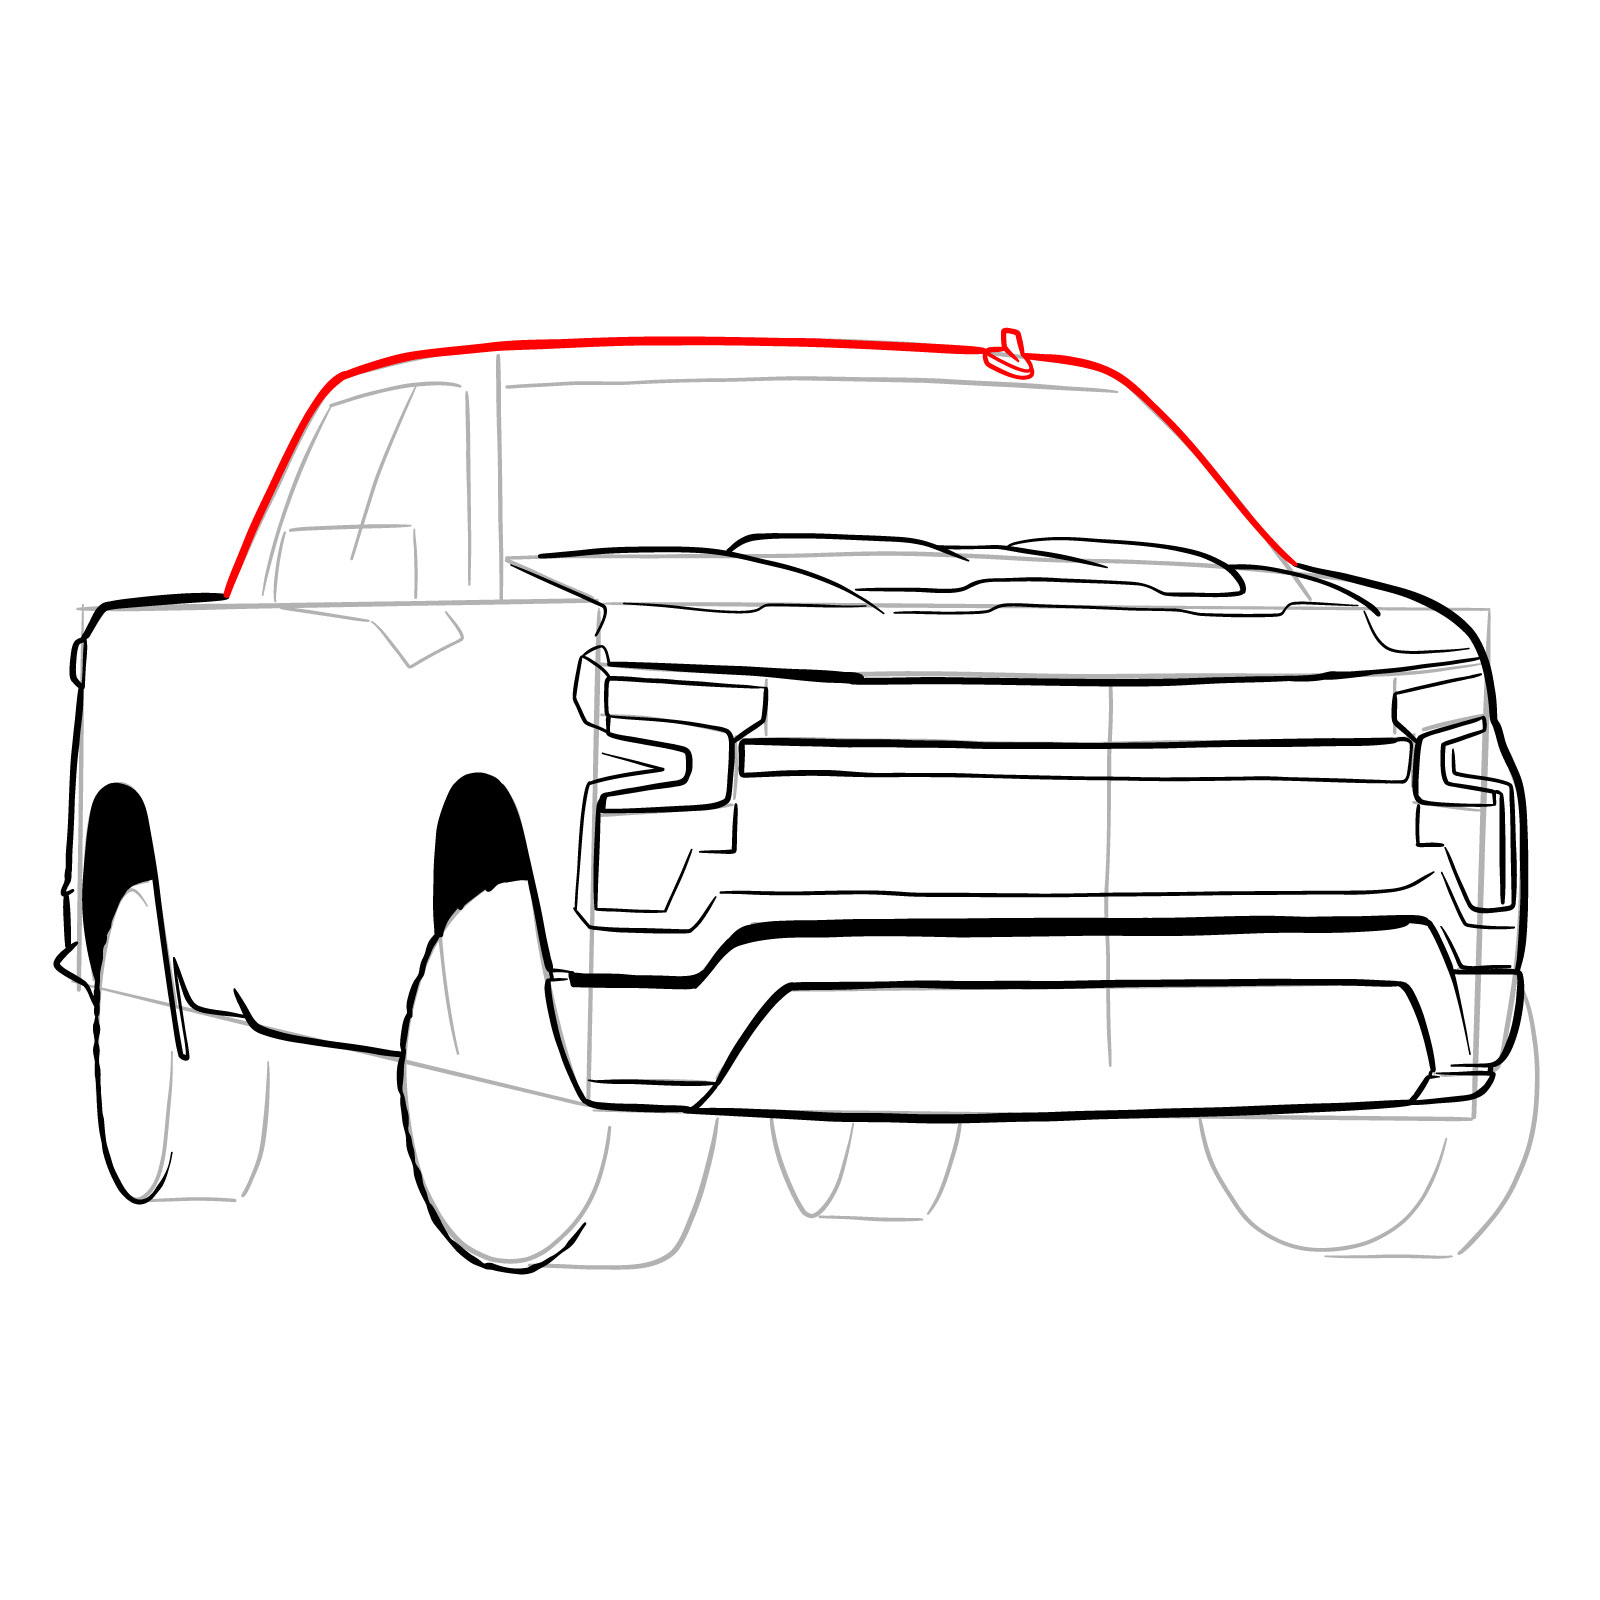 How to draw a 2022 Chevy Silverado - step 20